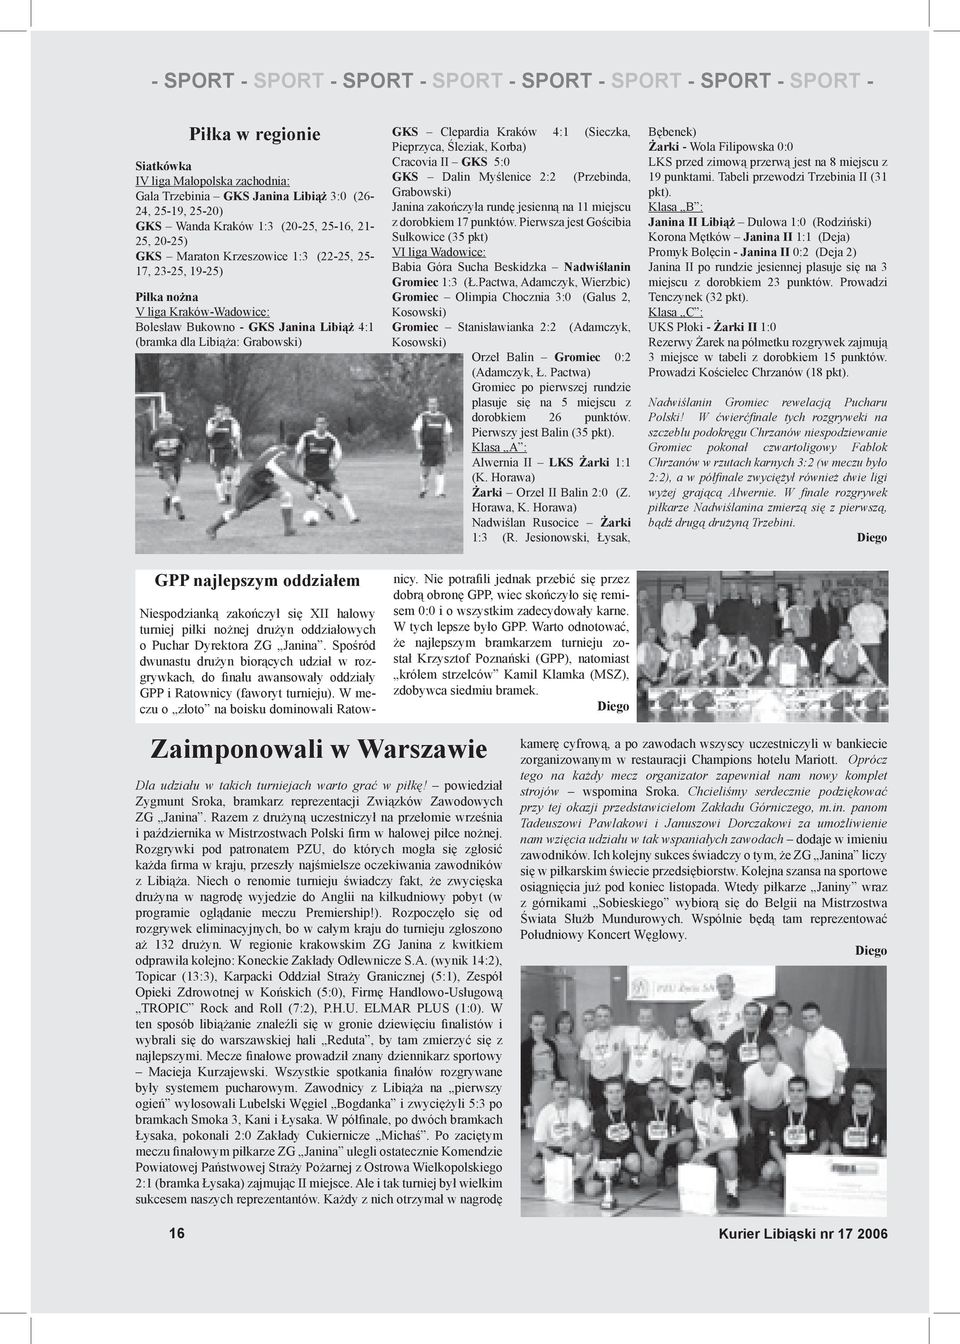 GKS Clepardia Kraków 4:1 (Sieczka, Pieprzyca, Śleziak, Korba) Cracovia II GKS 5:0 GKS Dalin Myślenice 2:2 (Przebinda, Grabowski) Janina zakończyła rundę jesienną na 11 miejscu z dorobkiem 17 punktów.